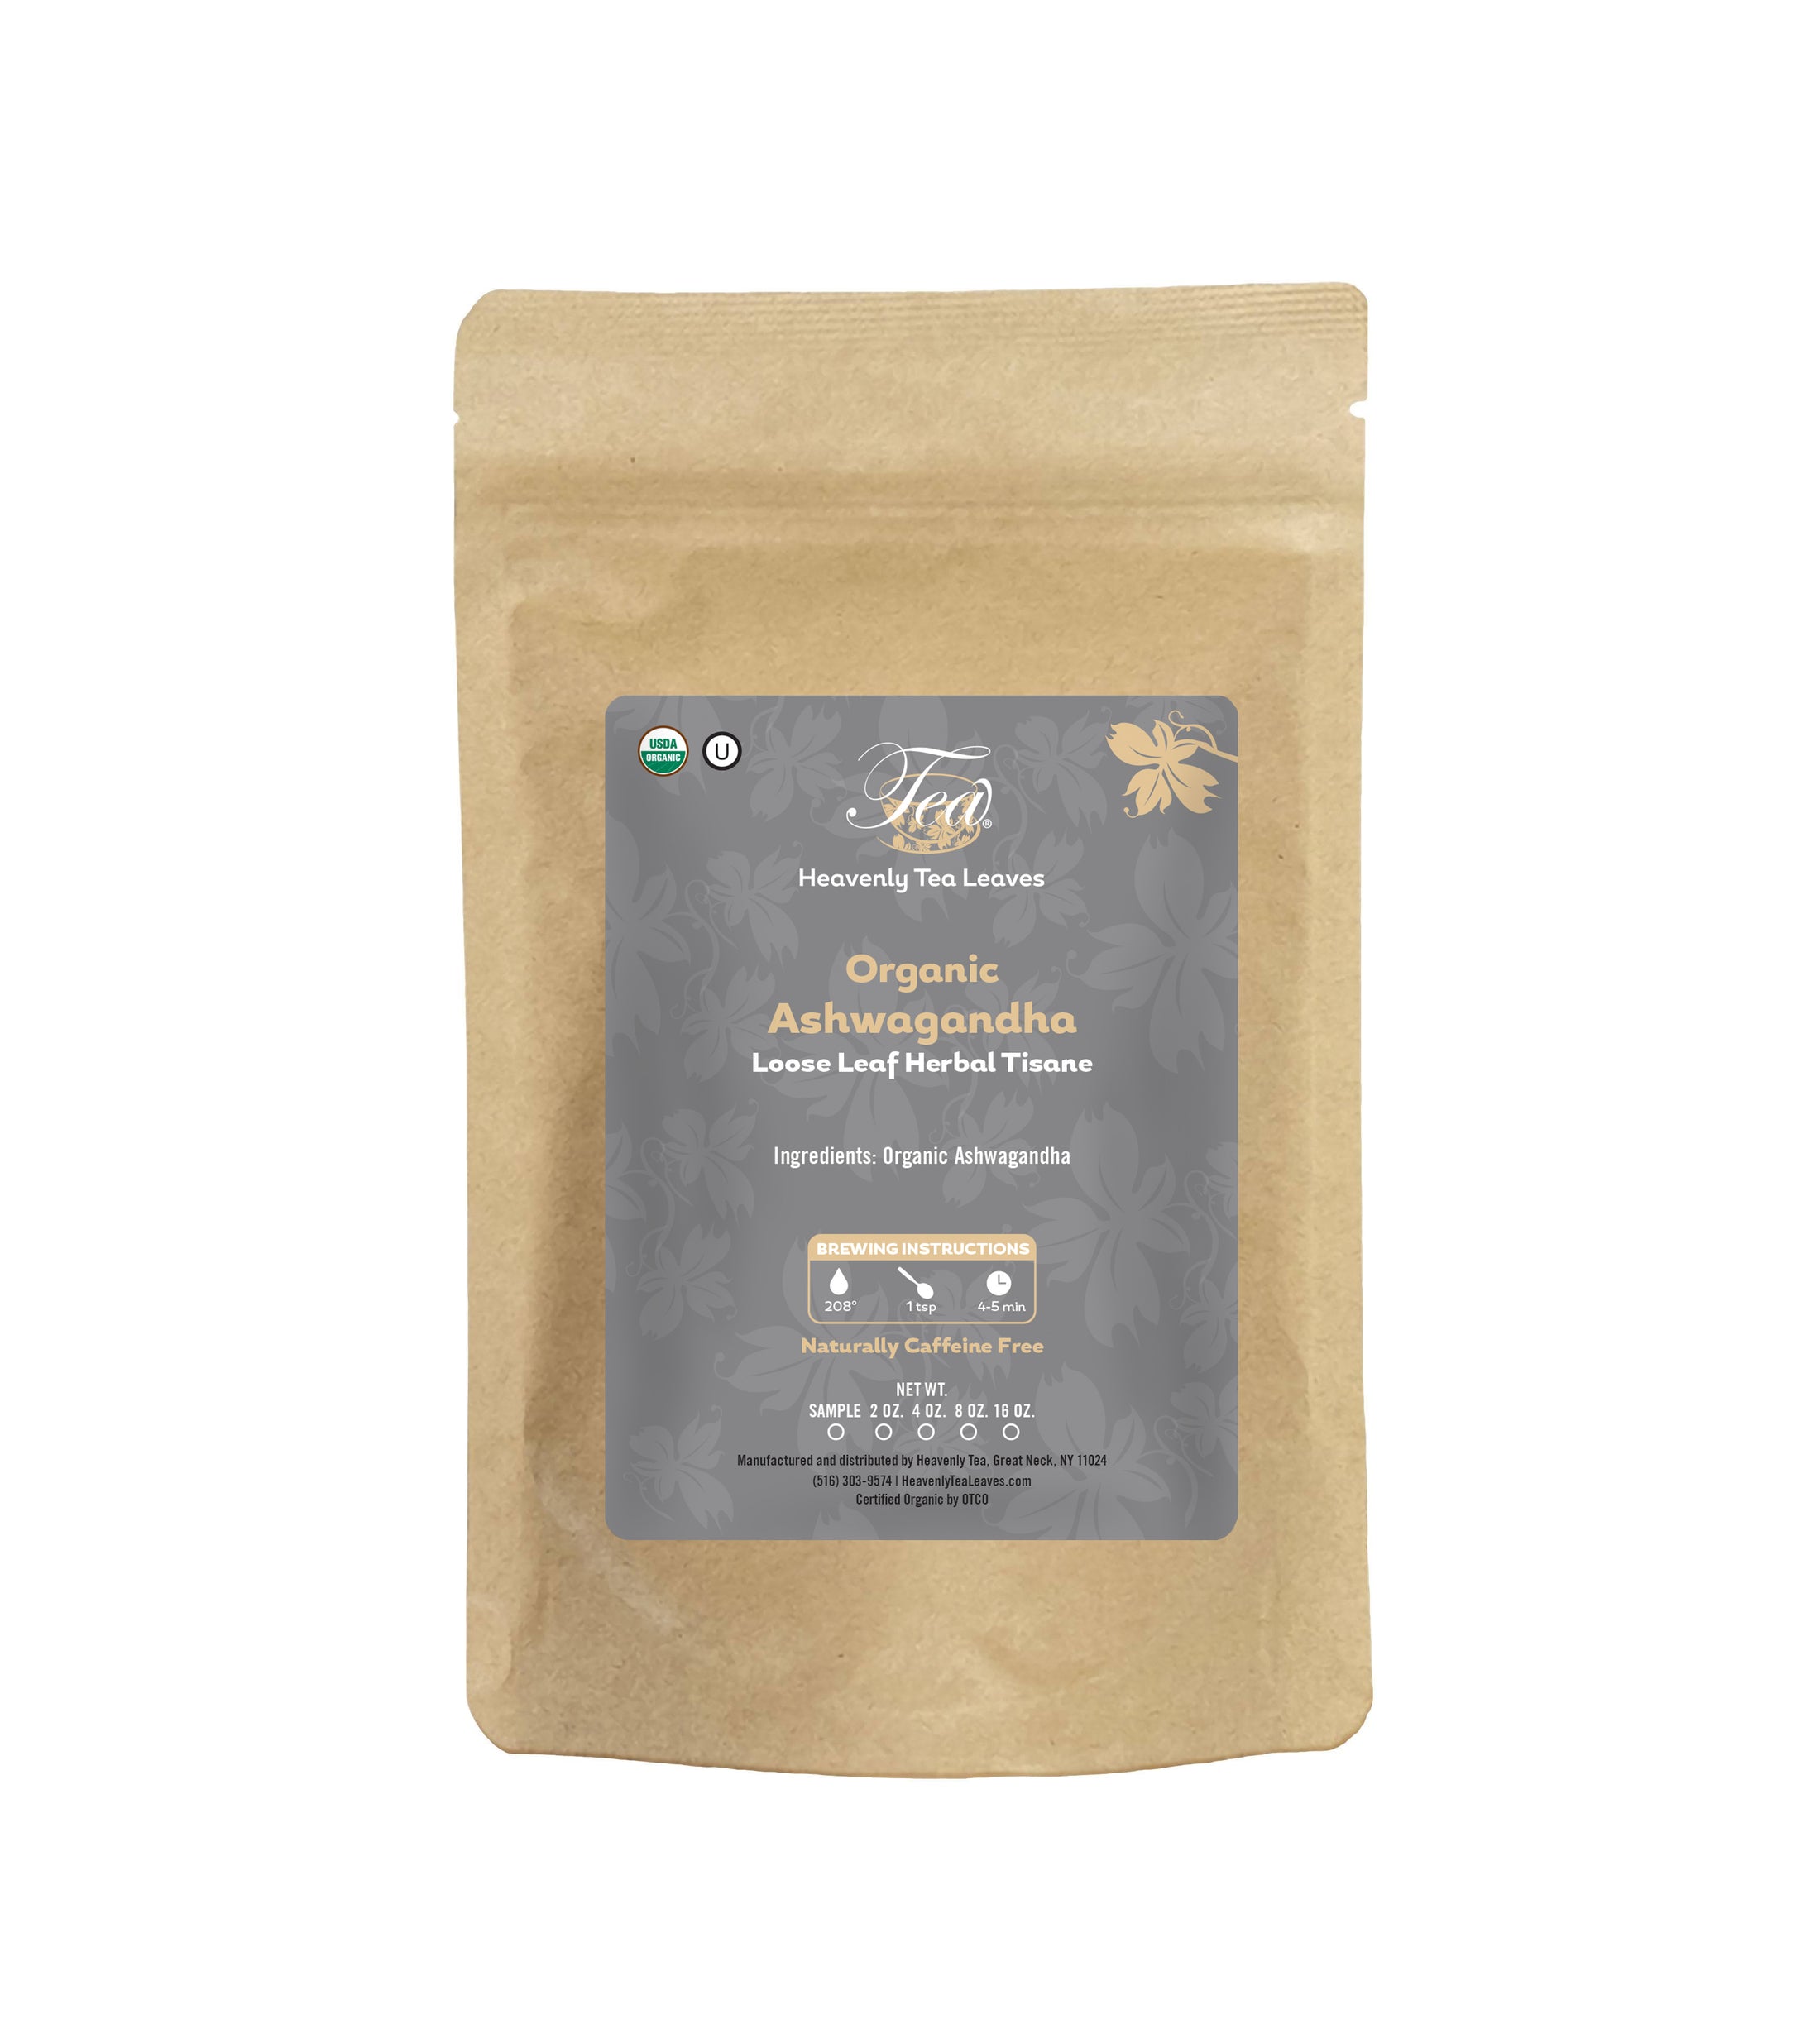 Organic Ashwagandha - Loose Leaf Herbal Tea | Heavenly Tea Leaves